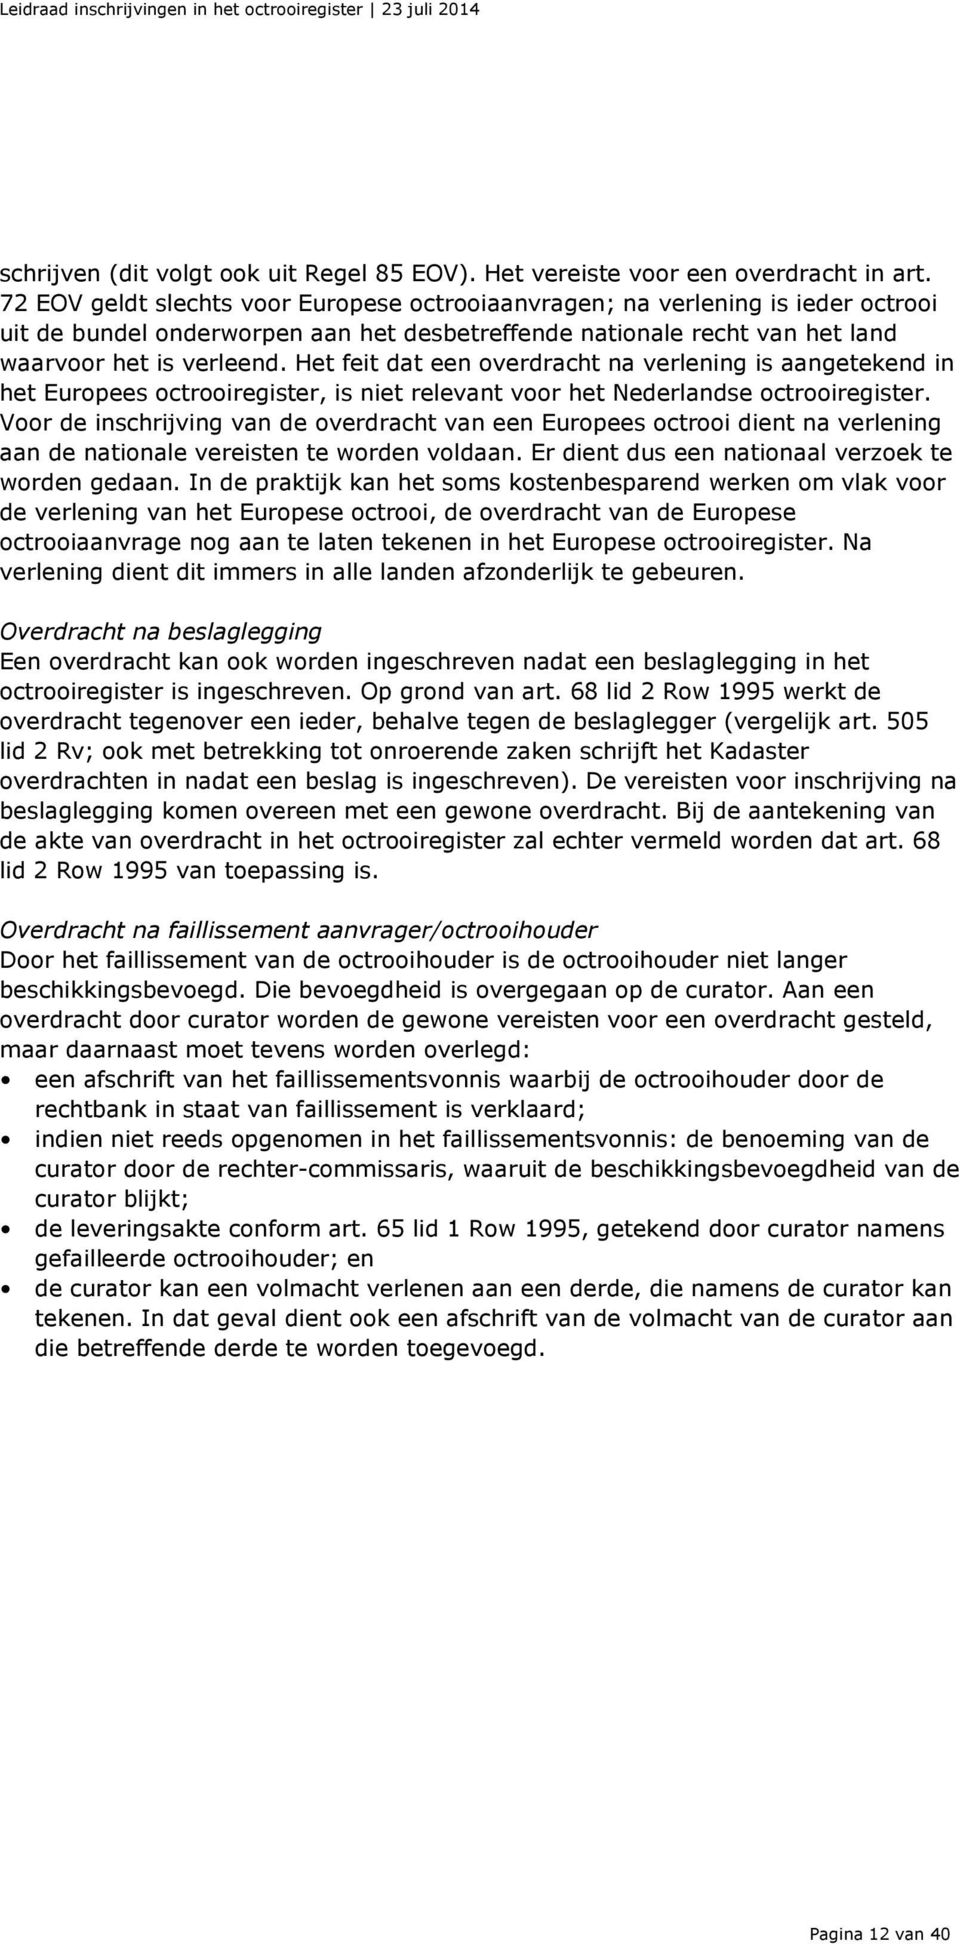 Het feit dat een overdracht na verlening is aangetekend in het Europees octrooiregister, is niet relevant voor het Nederlandse octrooiregister.